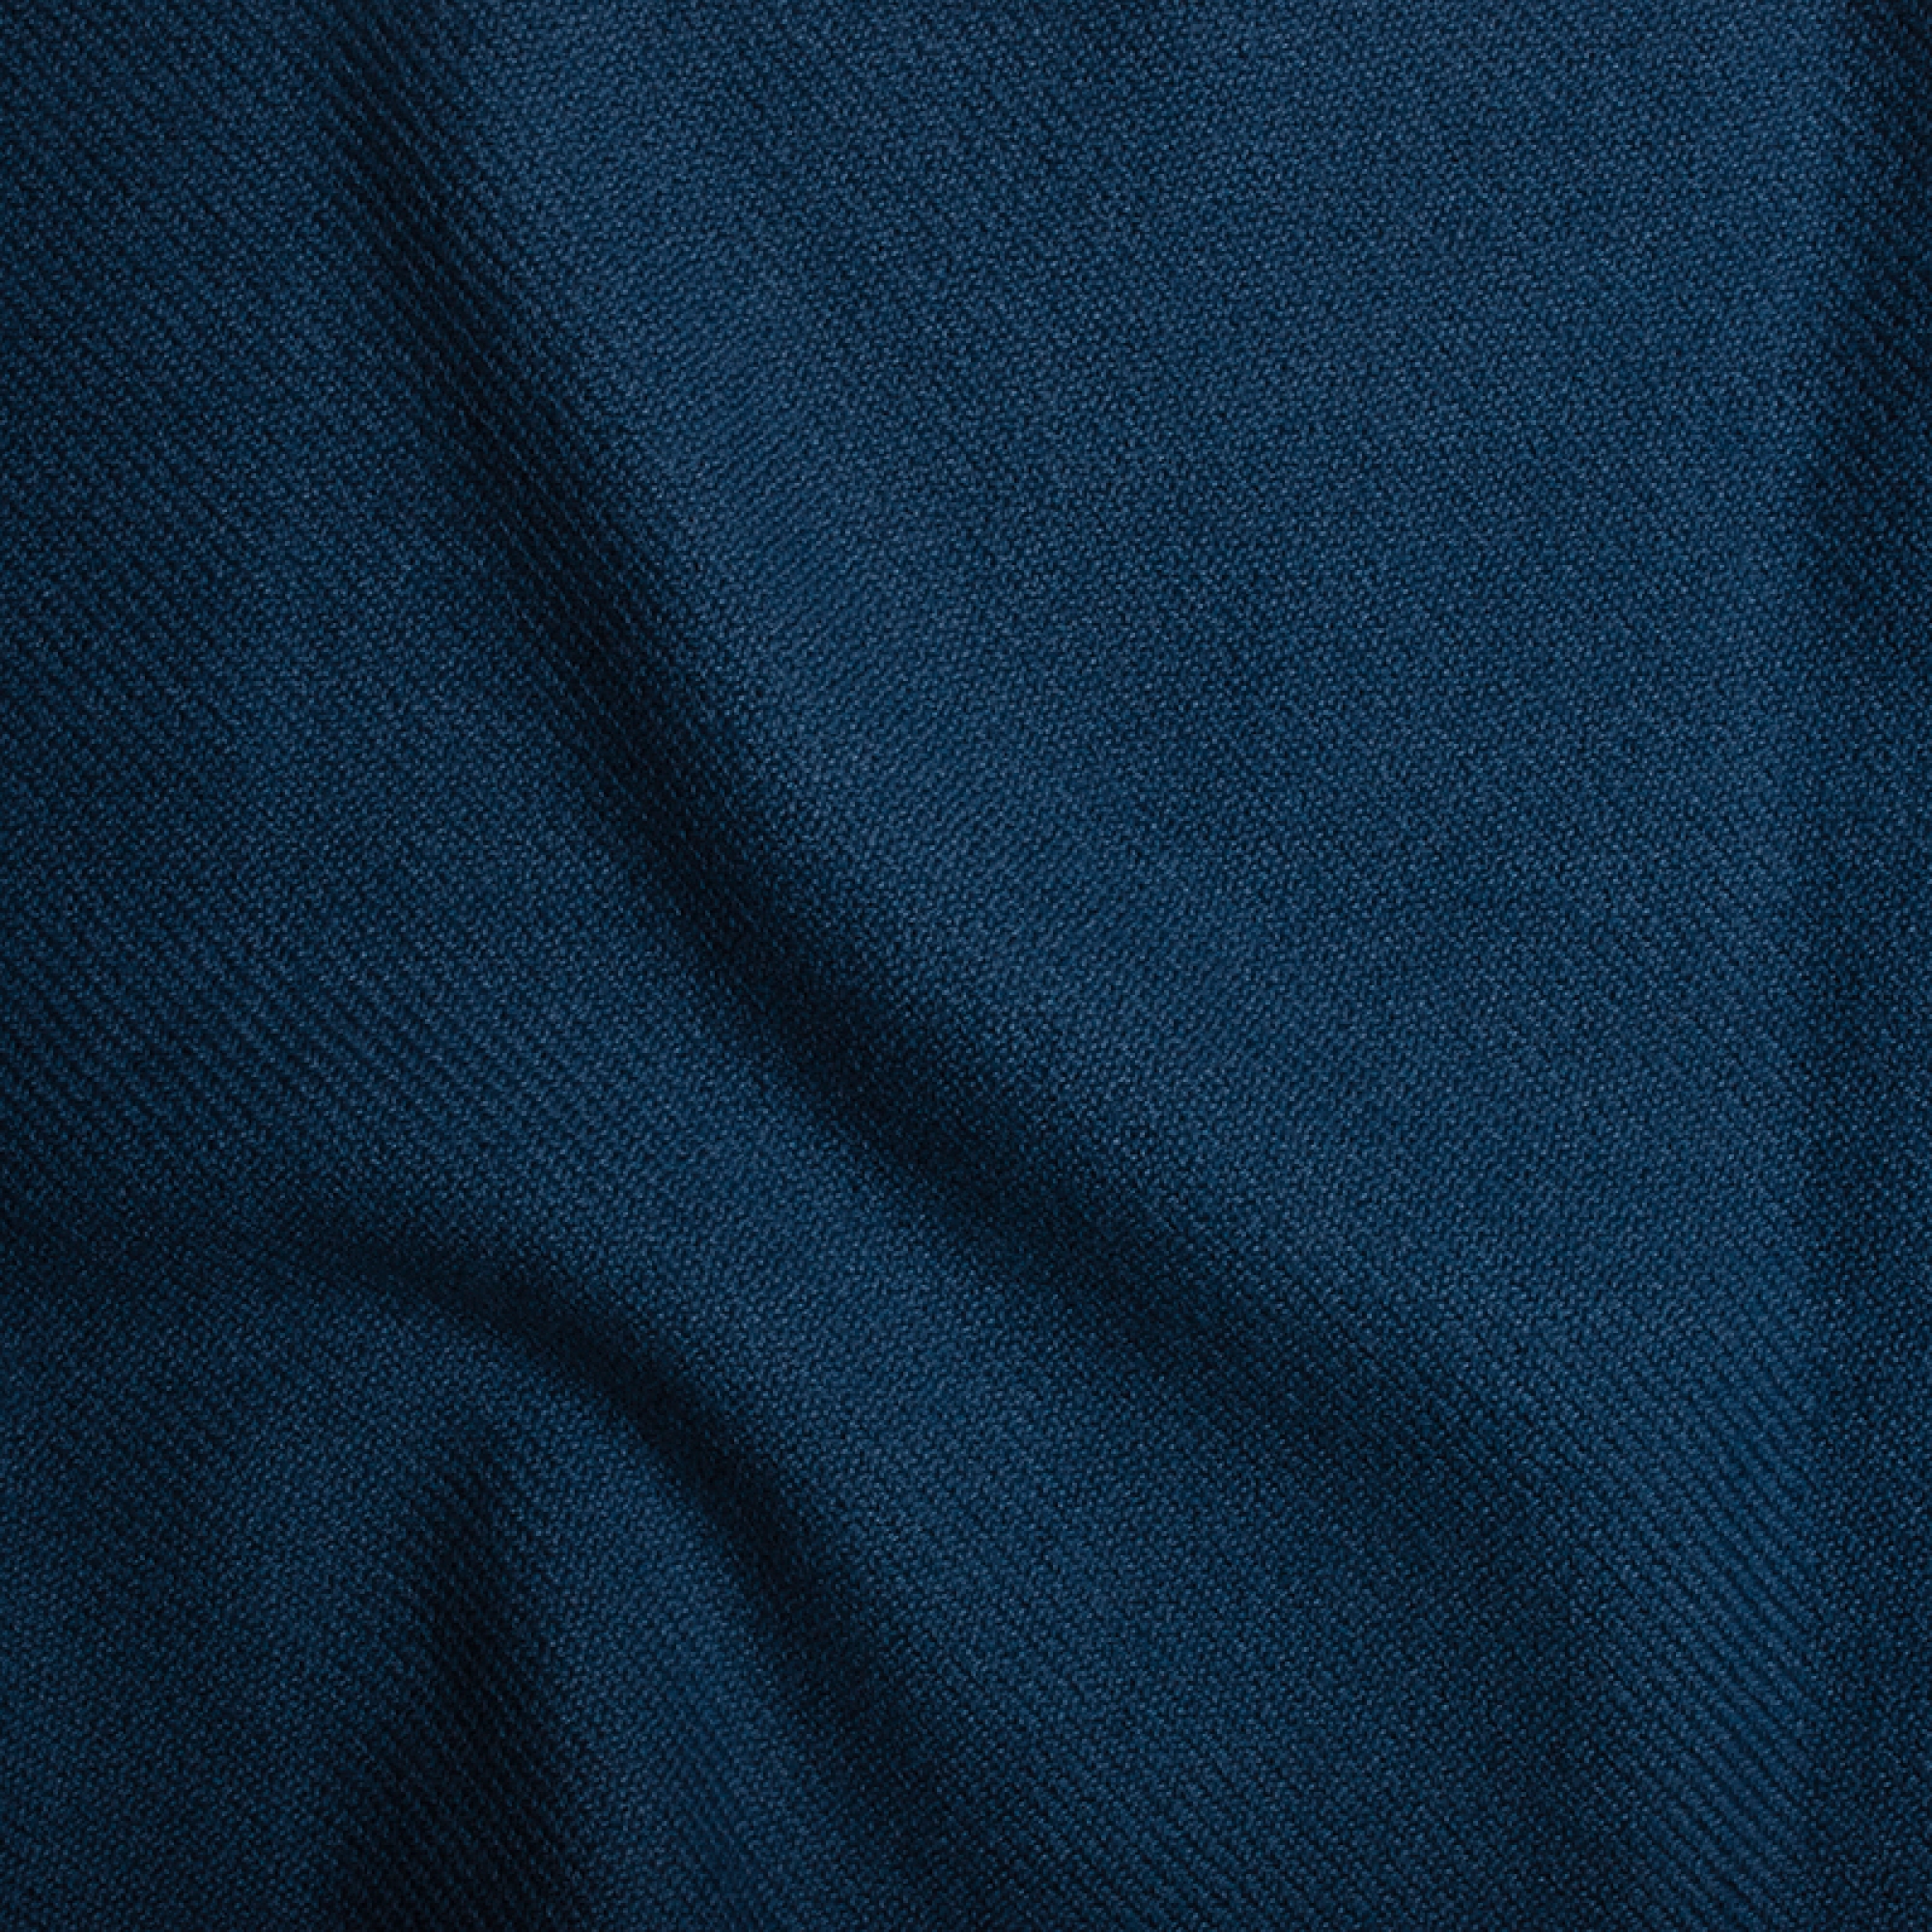 Cashmere accessories blanket toodoo plain l 220 x 220 dark blue 220x220cm